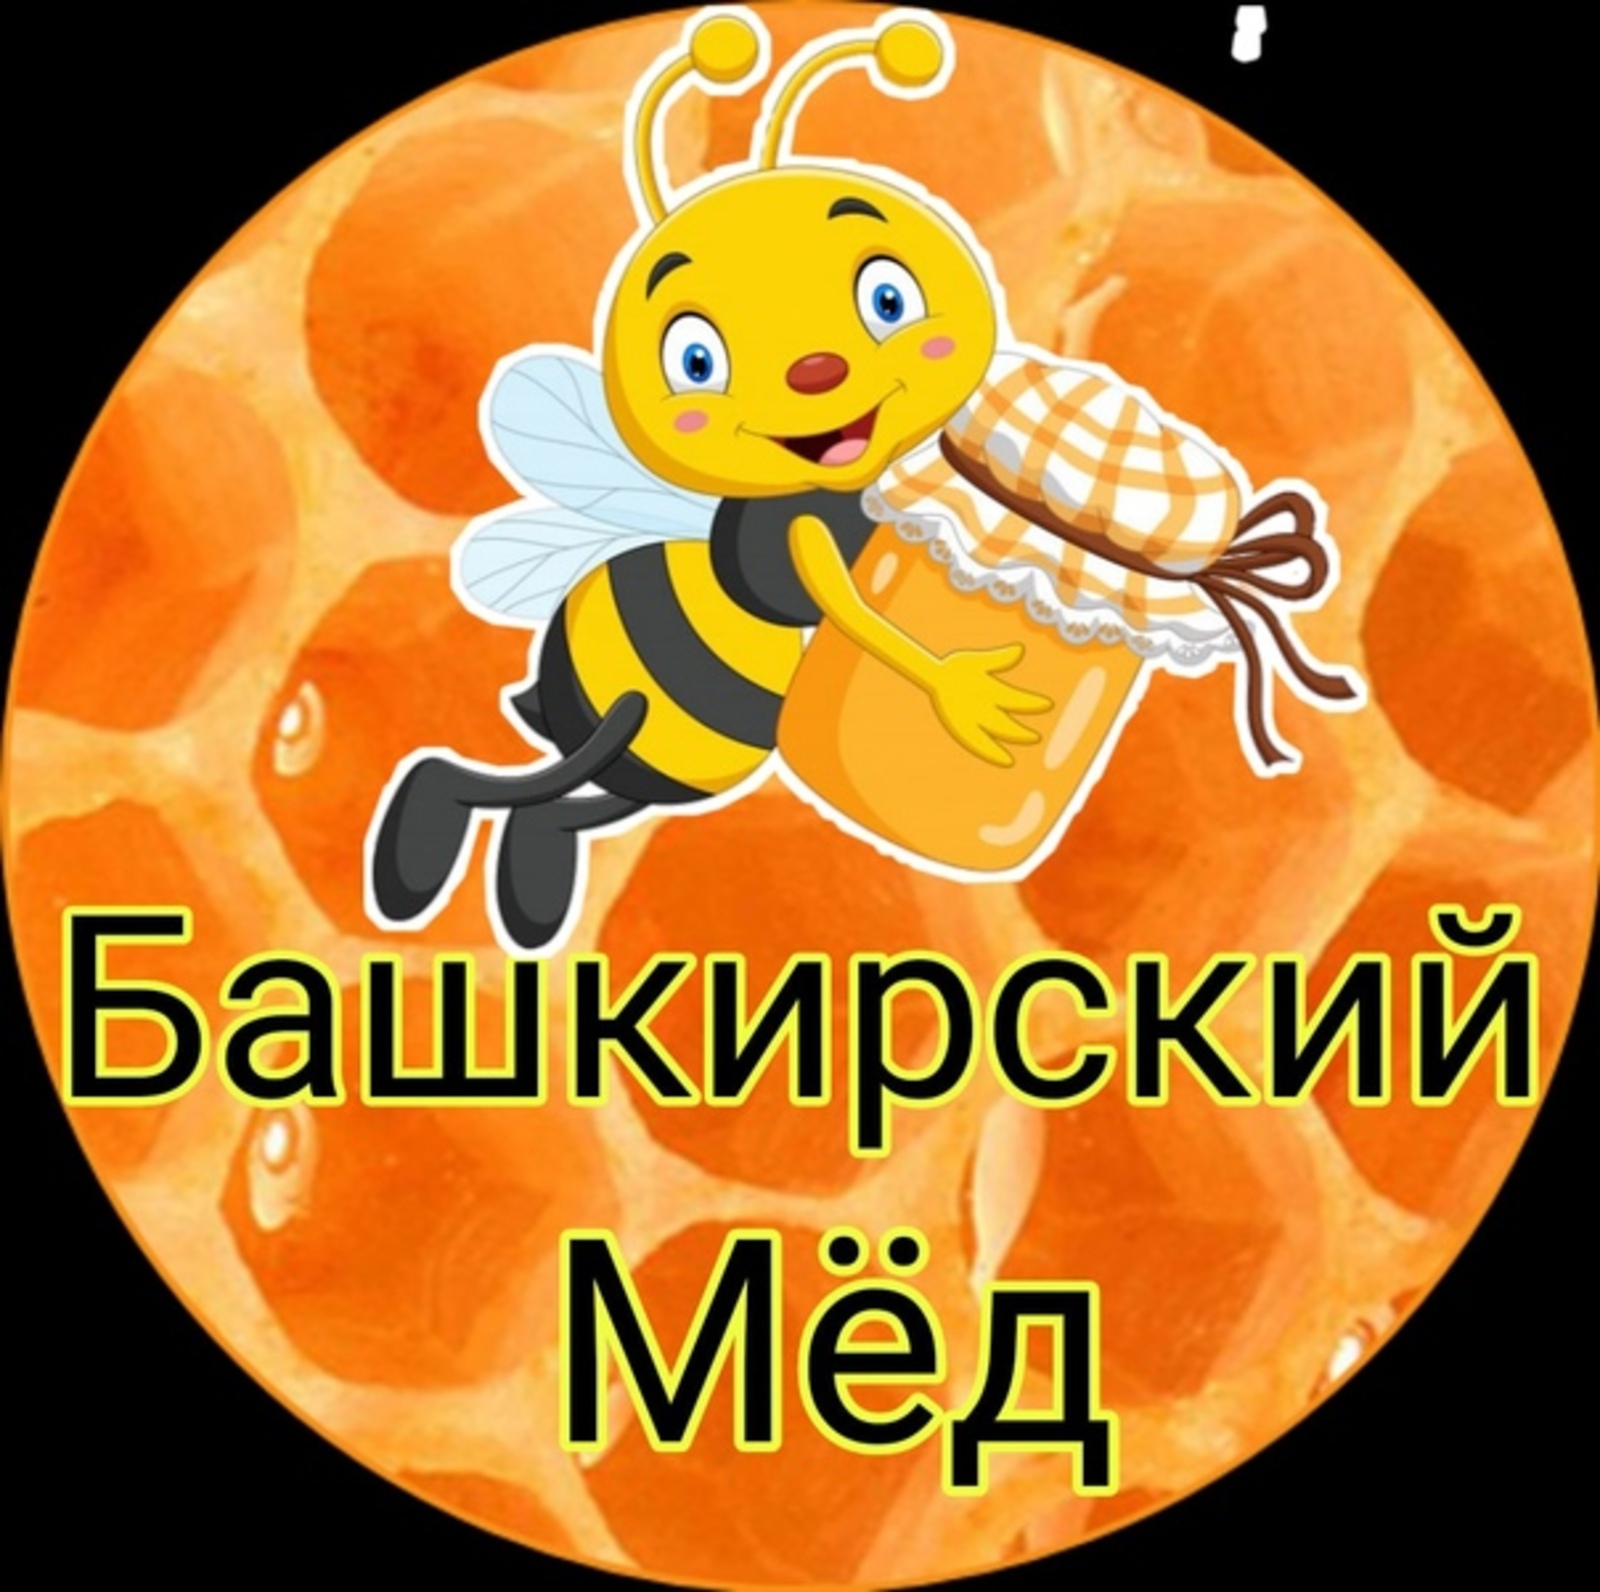 А вы проголосовали за Башкирский мёд?